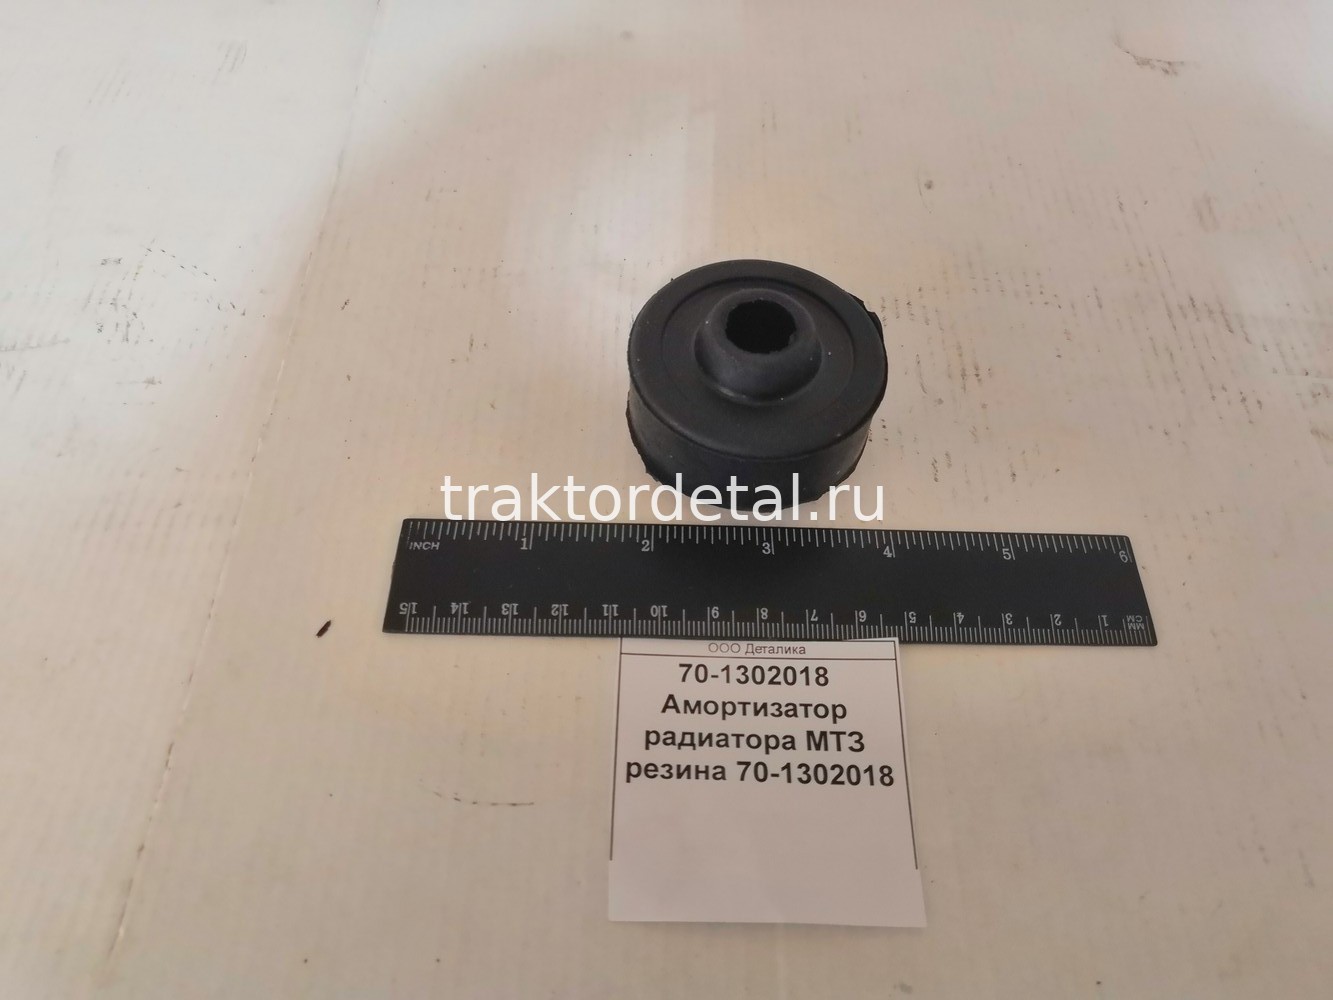 Амортизатор радиатора МТЗ резина 70-1302018